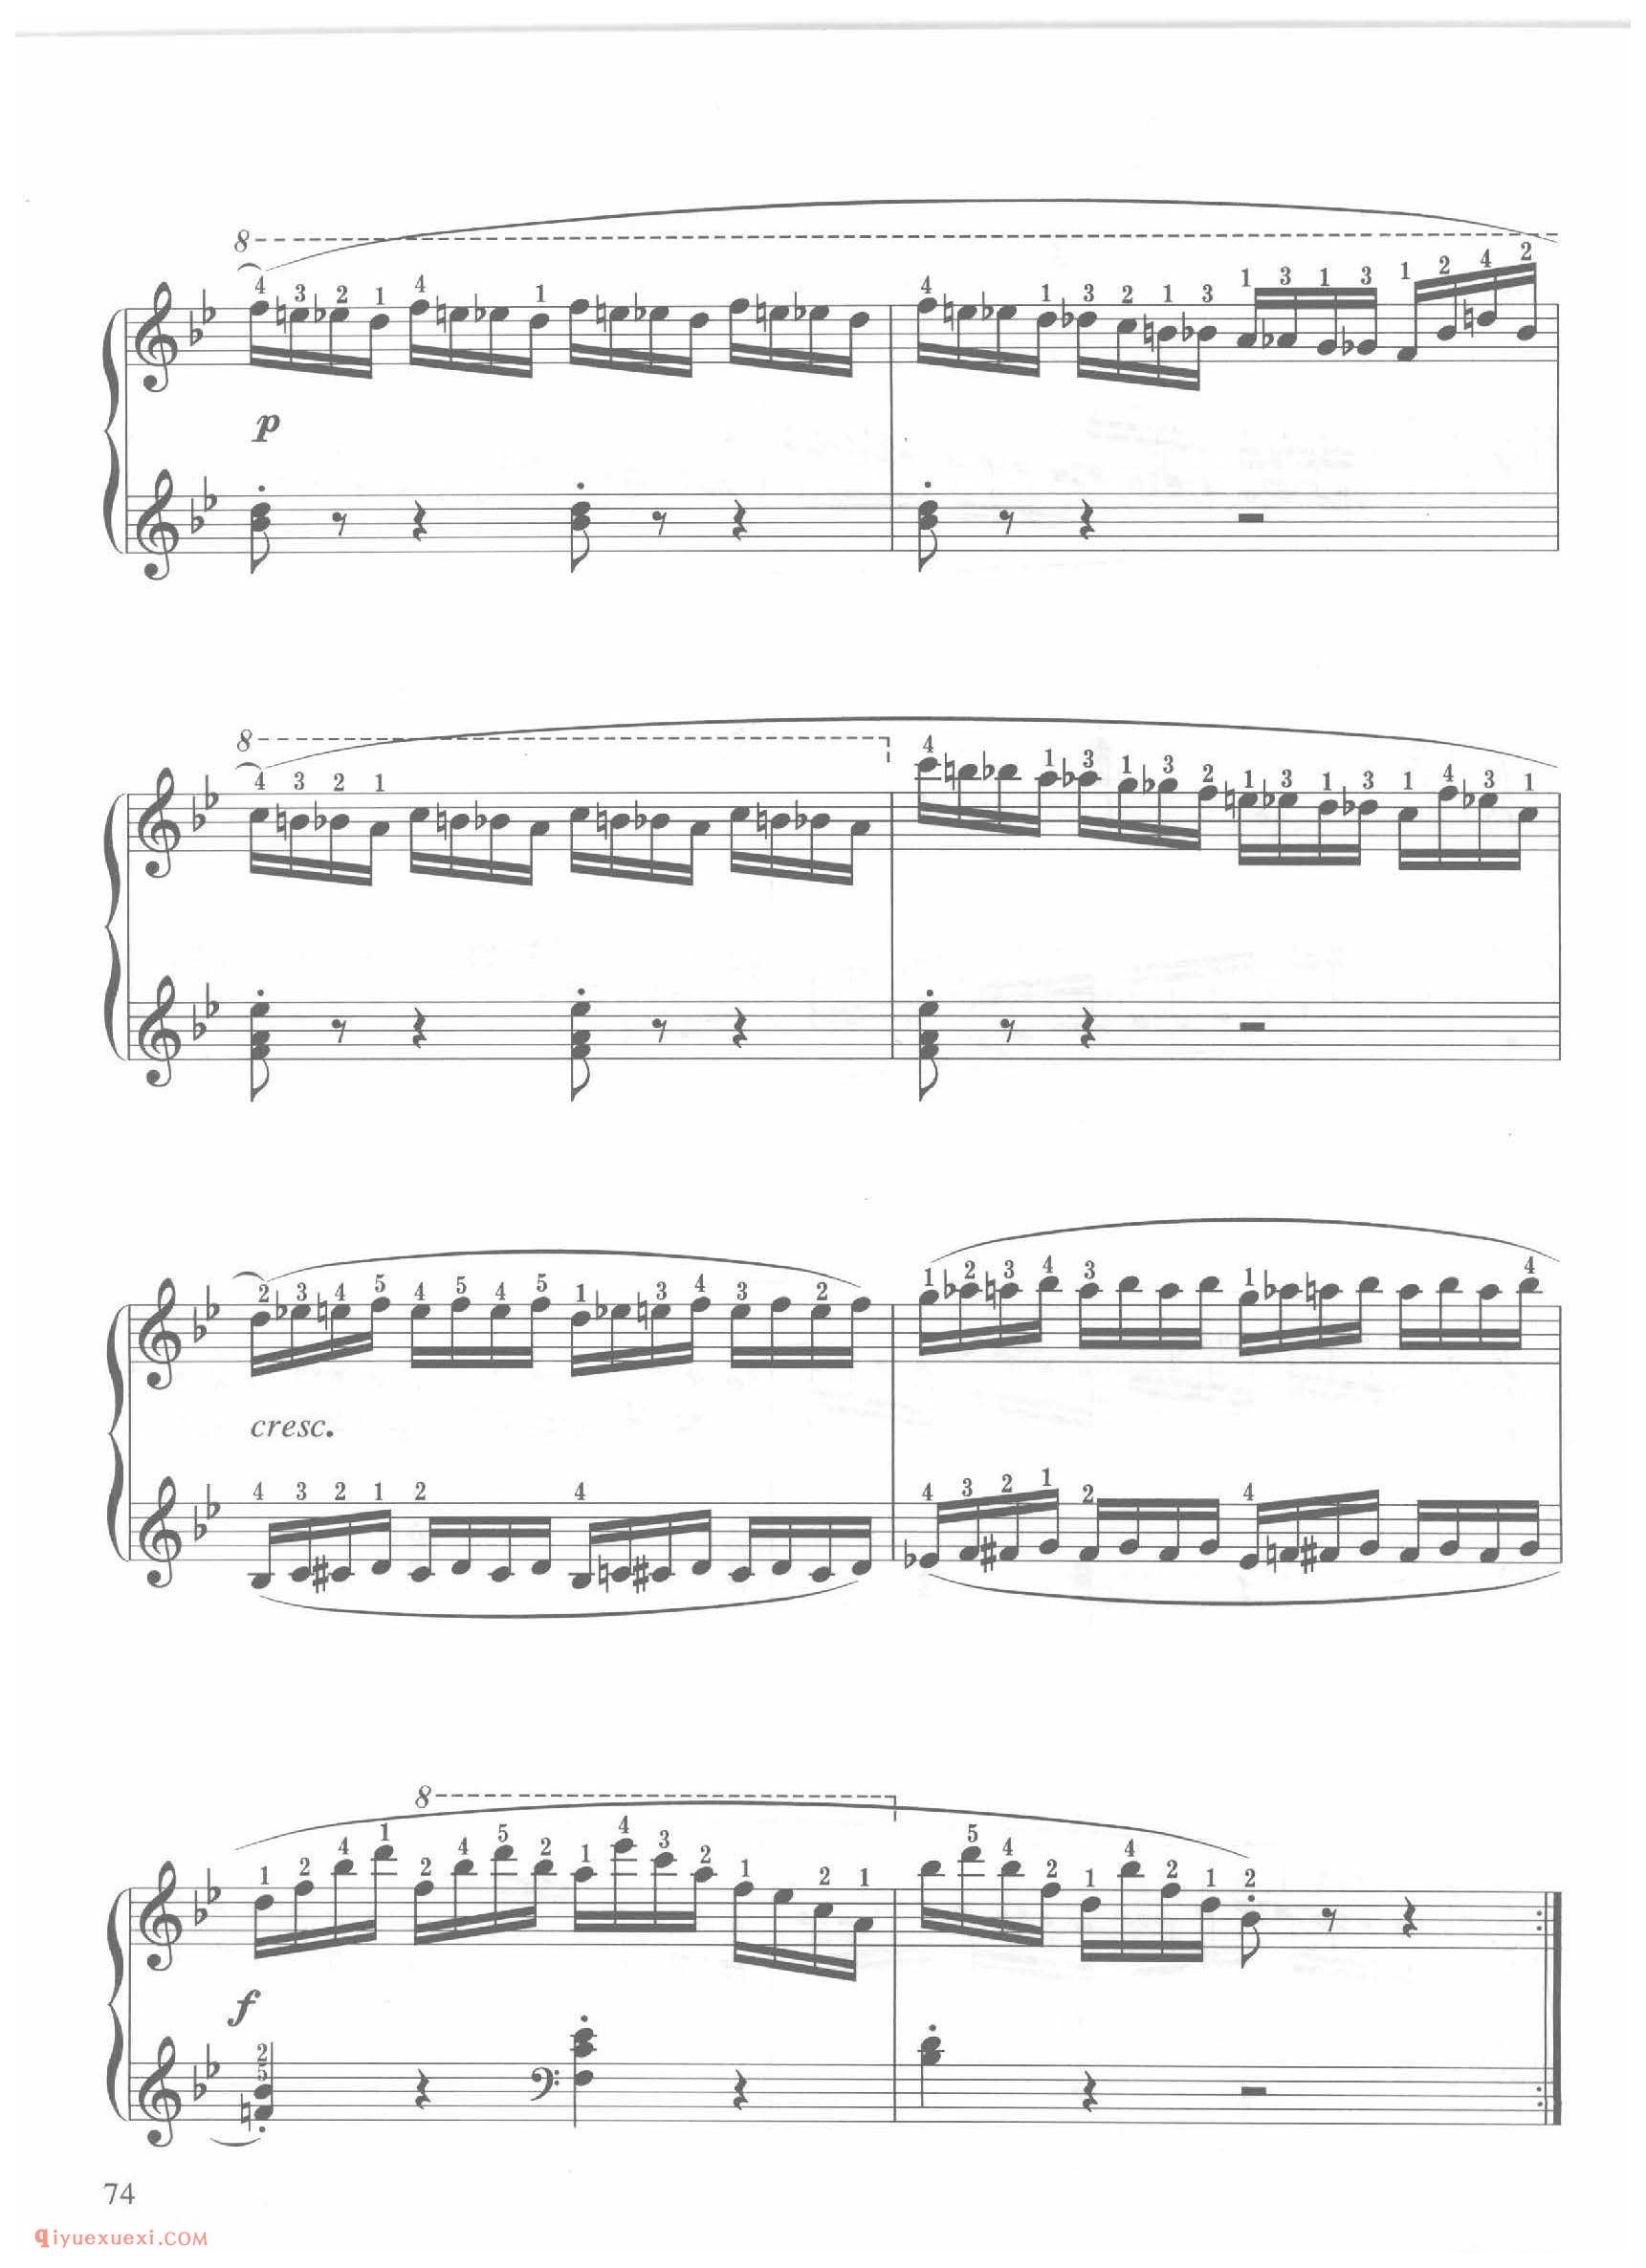 第21条降B大调活泼的快板( Allegro vivace)车尔尼钢琴作品849_常桦讲解 注释